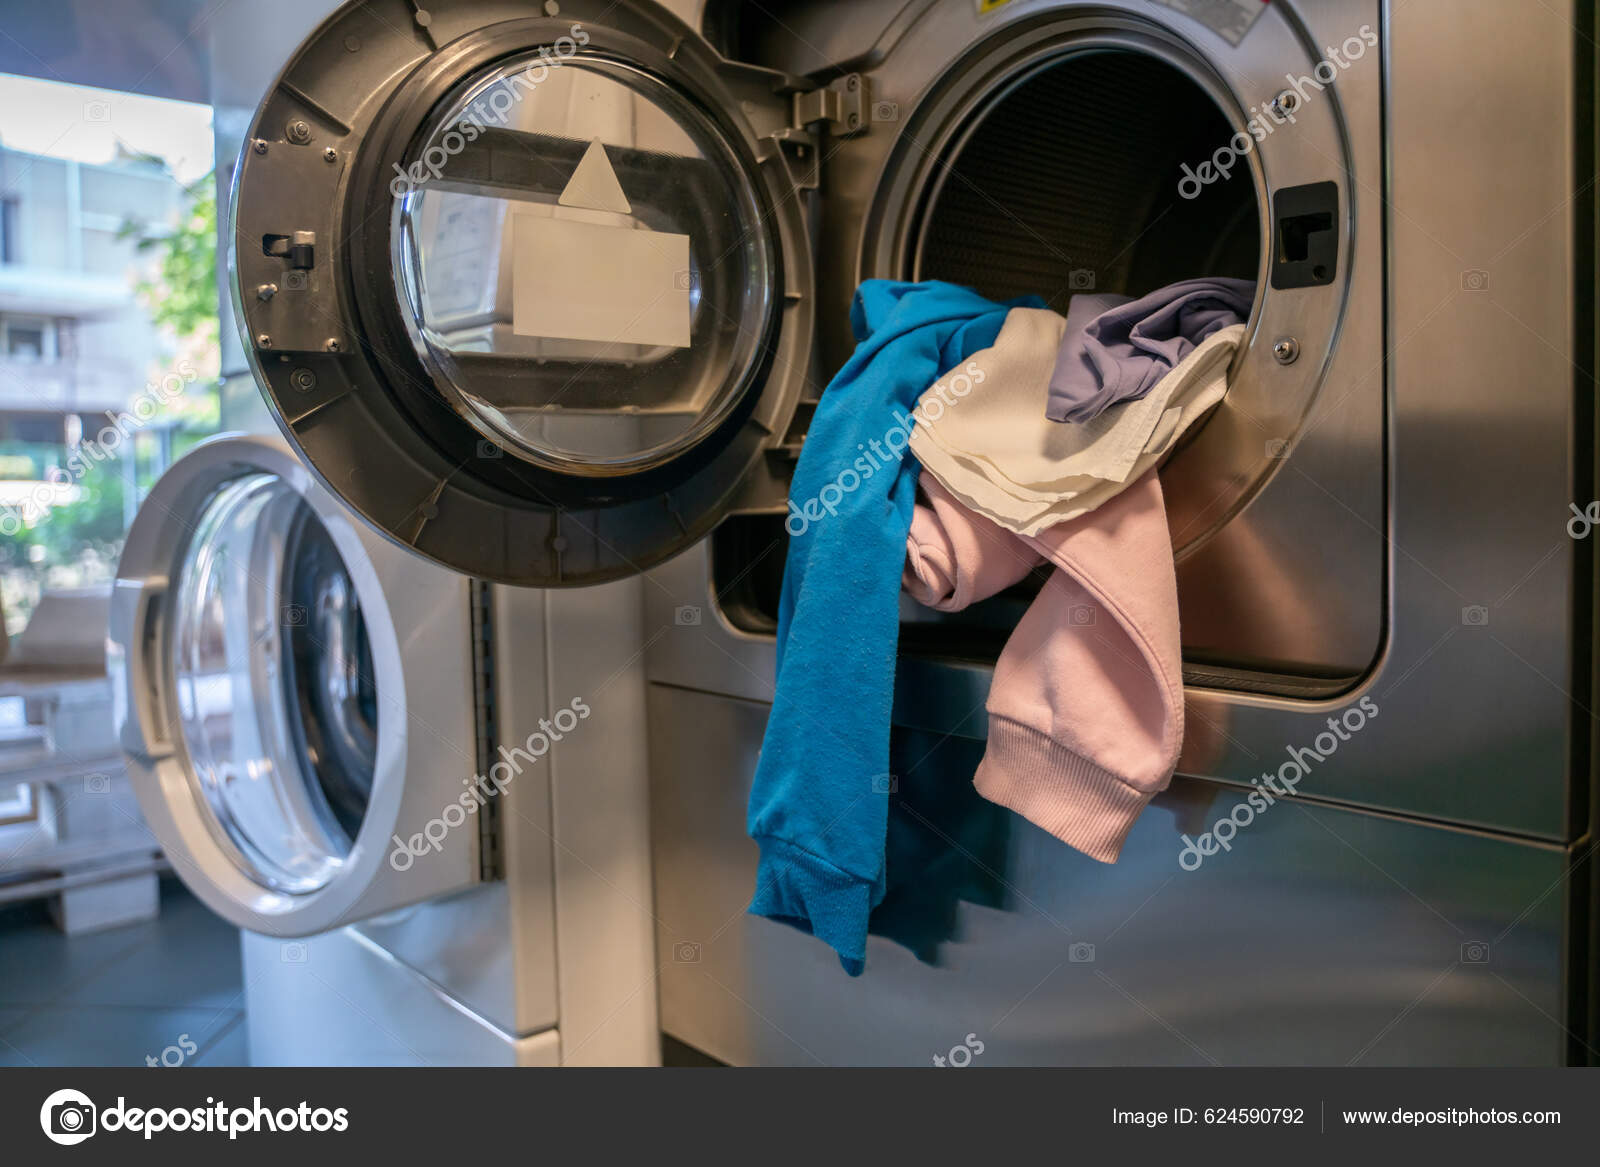 Öppen Automatisk Tvättmaskin Laddad Med Hög Smutsiga Kläder Offentlig  Tvättstuga — Stockfotografi © Dmyrto_Z #624590792